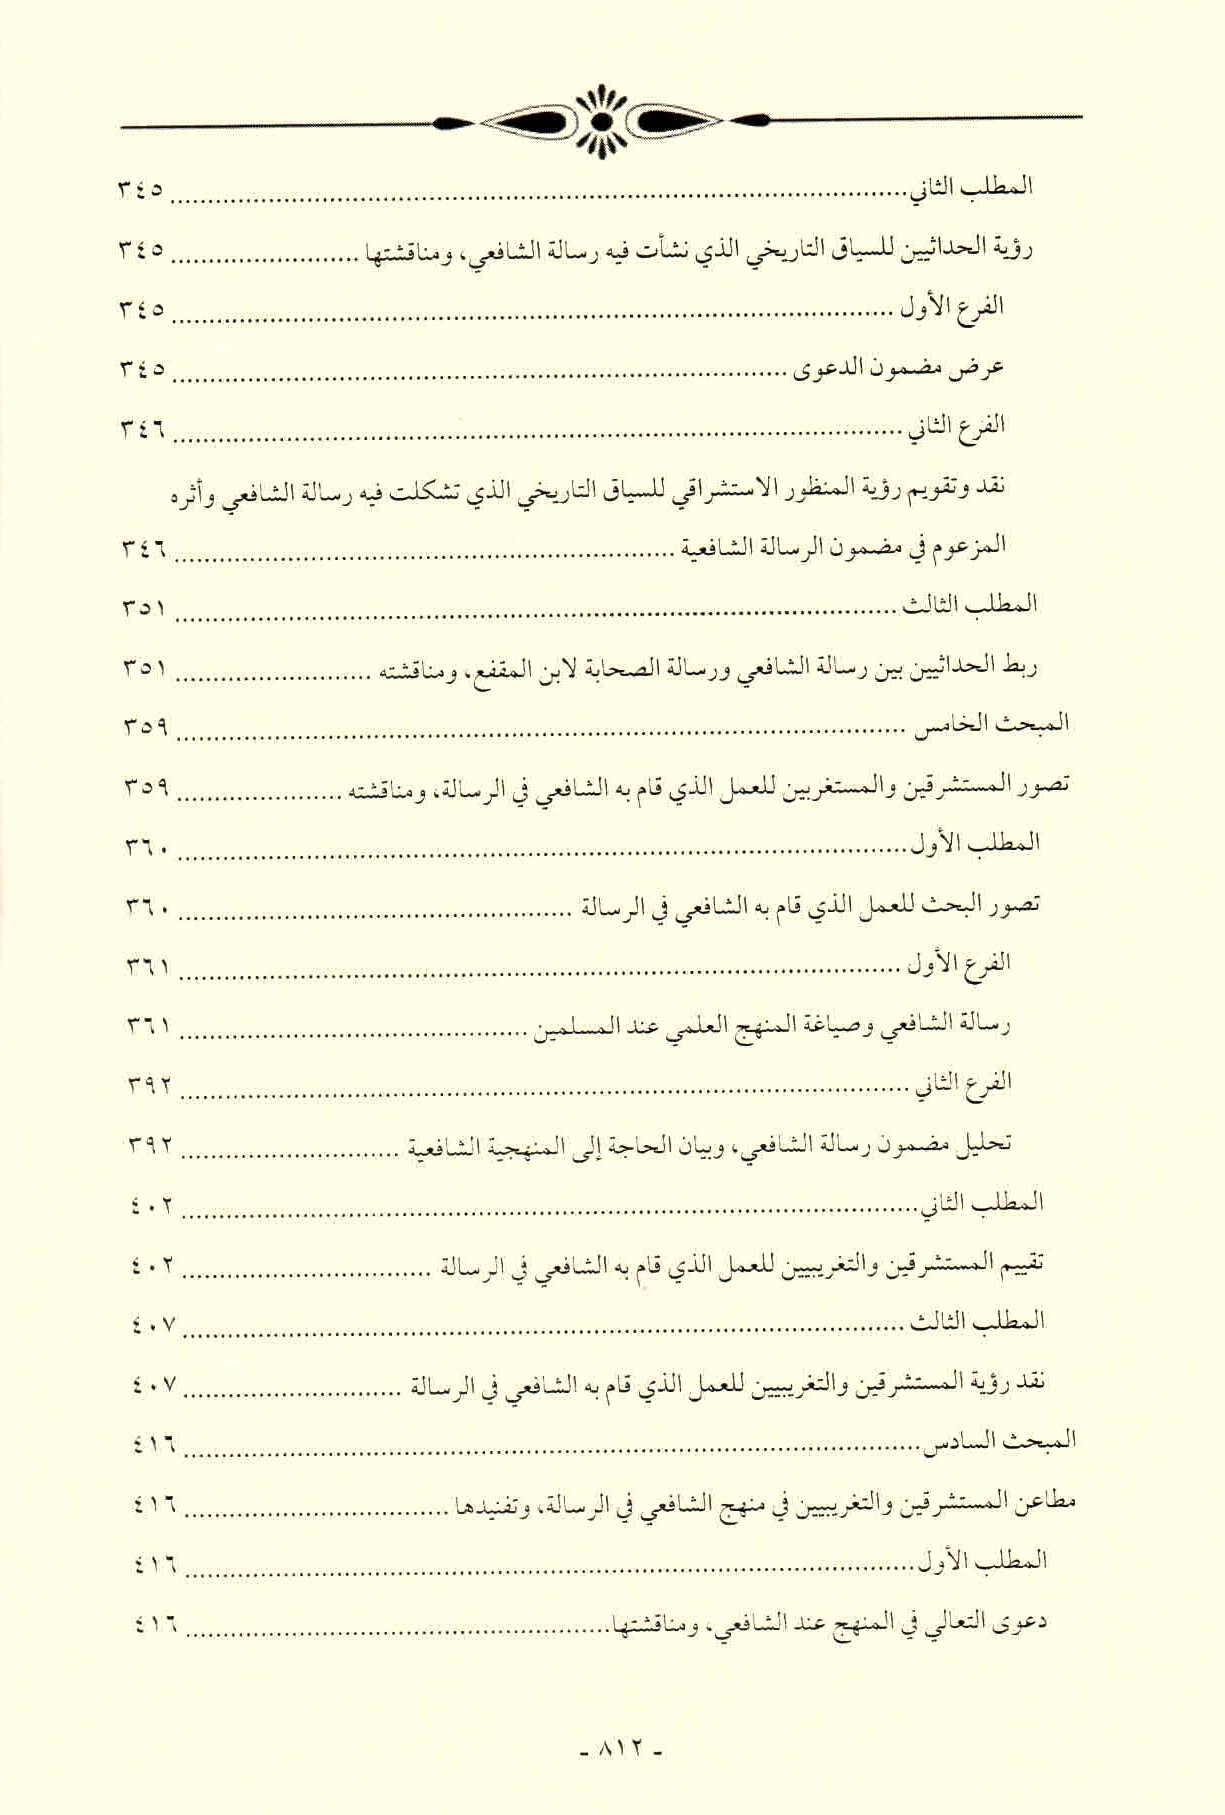 قائمة محتويات كتاب افتراءات المستشرقين والحداثيين على أصول الشريعة وأئمتها للدكتور هاني محمود ص. 812